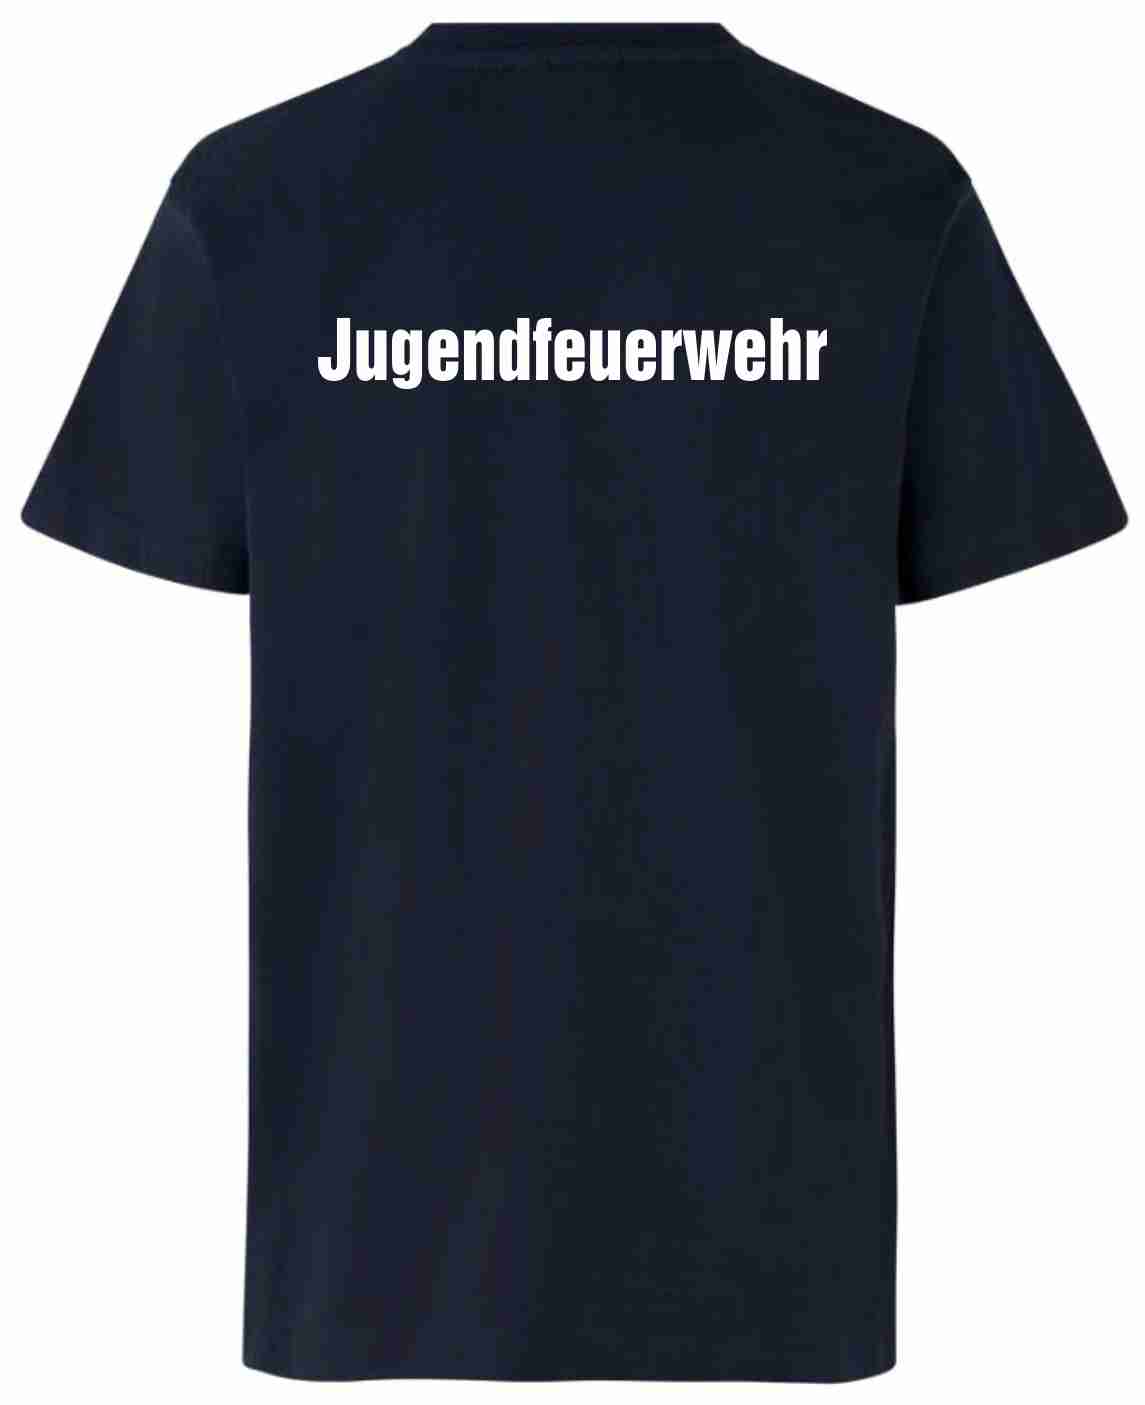 Damen-T-Shirt JFW 100% Baumwolle Farbe marineblau mit PATCH Rückenaufdruck JUGENDFEUERWEHR in weiß (andere Farben von T-Shirt und Aufdruck auf Anfrage), Größen XS - S - M - L - XL - XXL